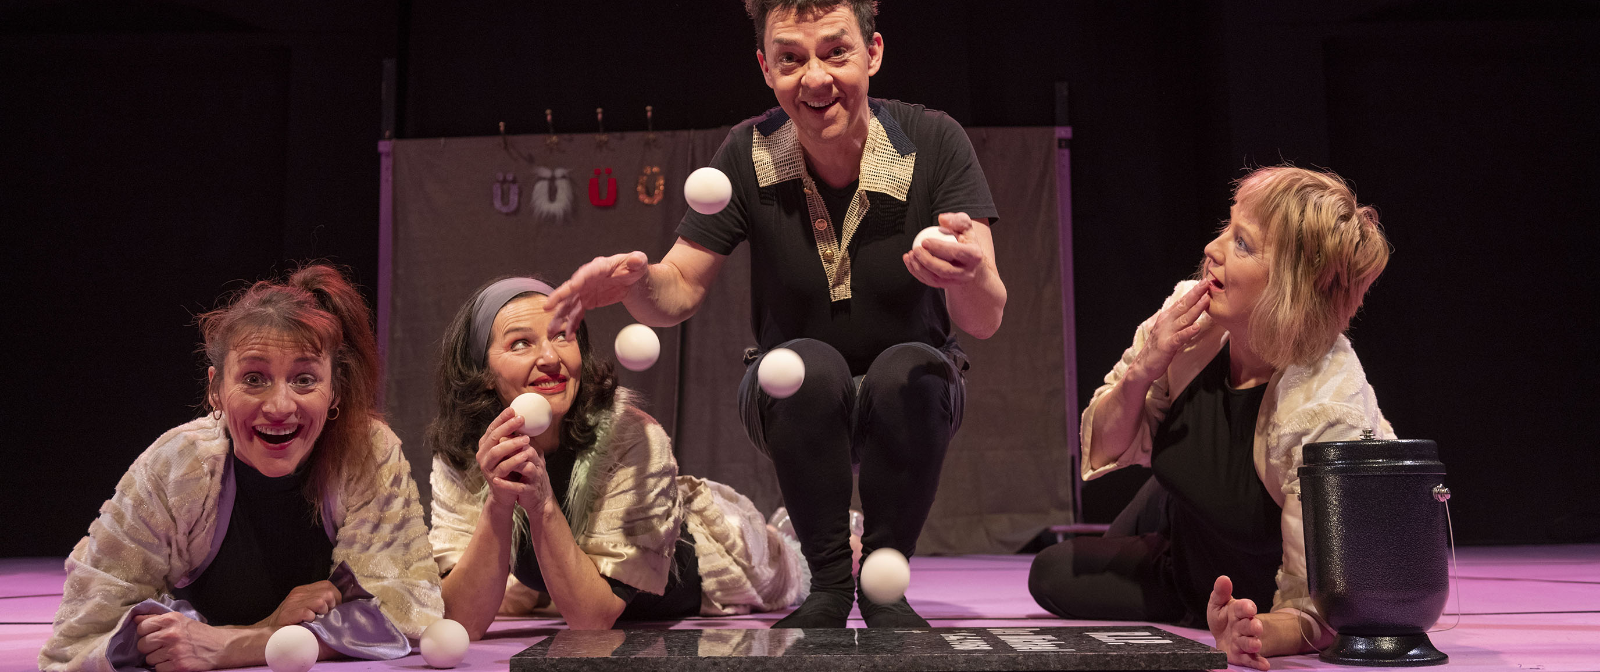 Vier Personen in einer Reihe, drei ligen auf dem Bauch und schauen Richtung Kmaera, die zweite von rechts hockt und jongliert vier weiße Bälle auf dem Boden.